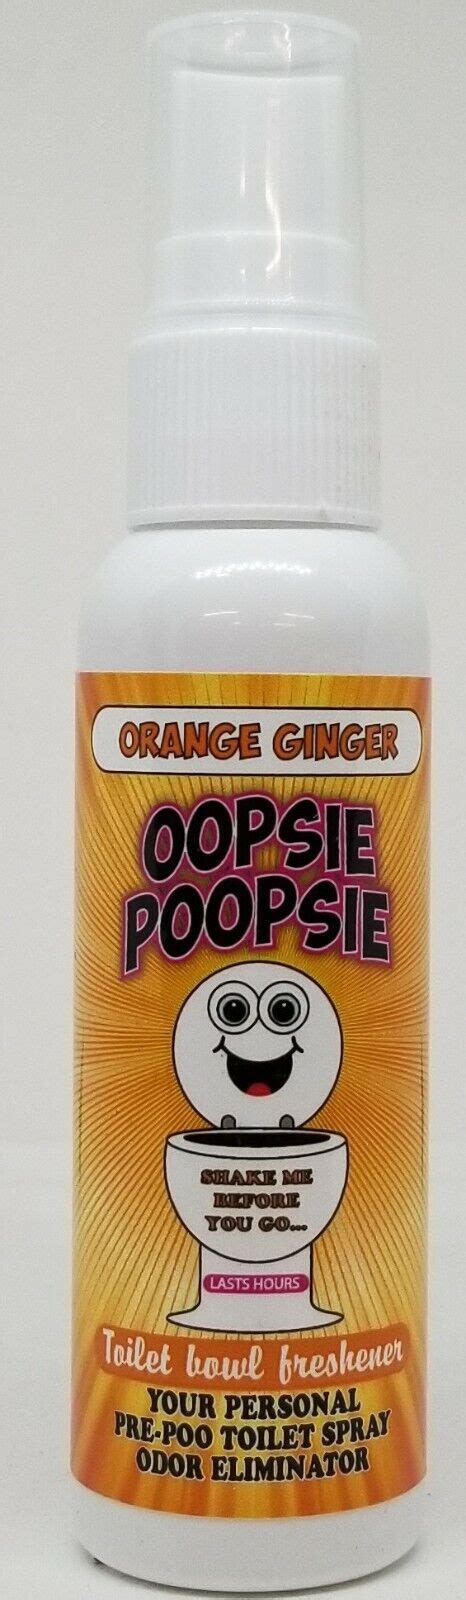 Oopsie Poopsie Toilet Bowl Freshener Pre Poop Odor Eliminator 2oz Lemon